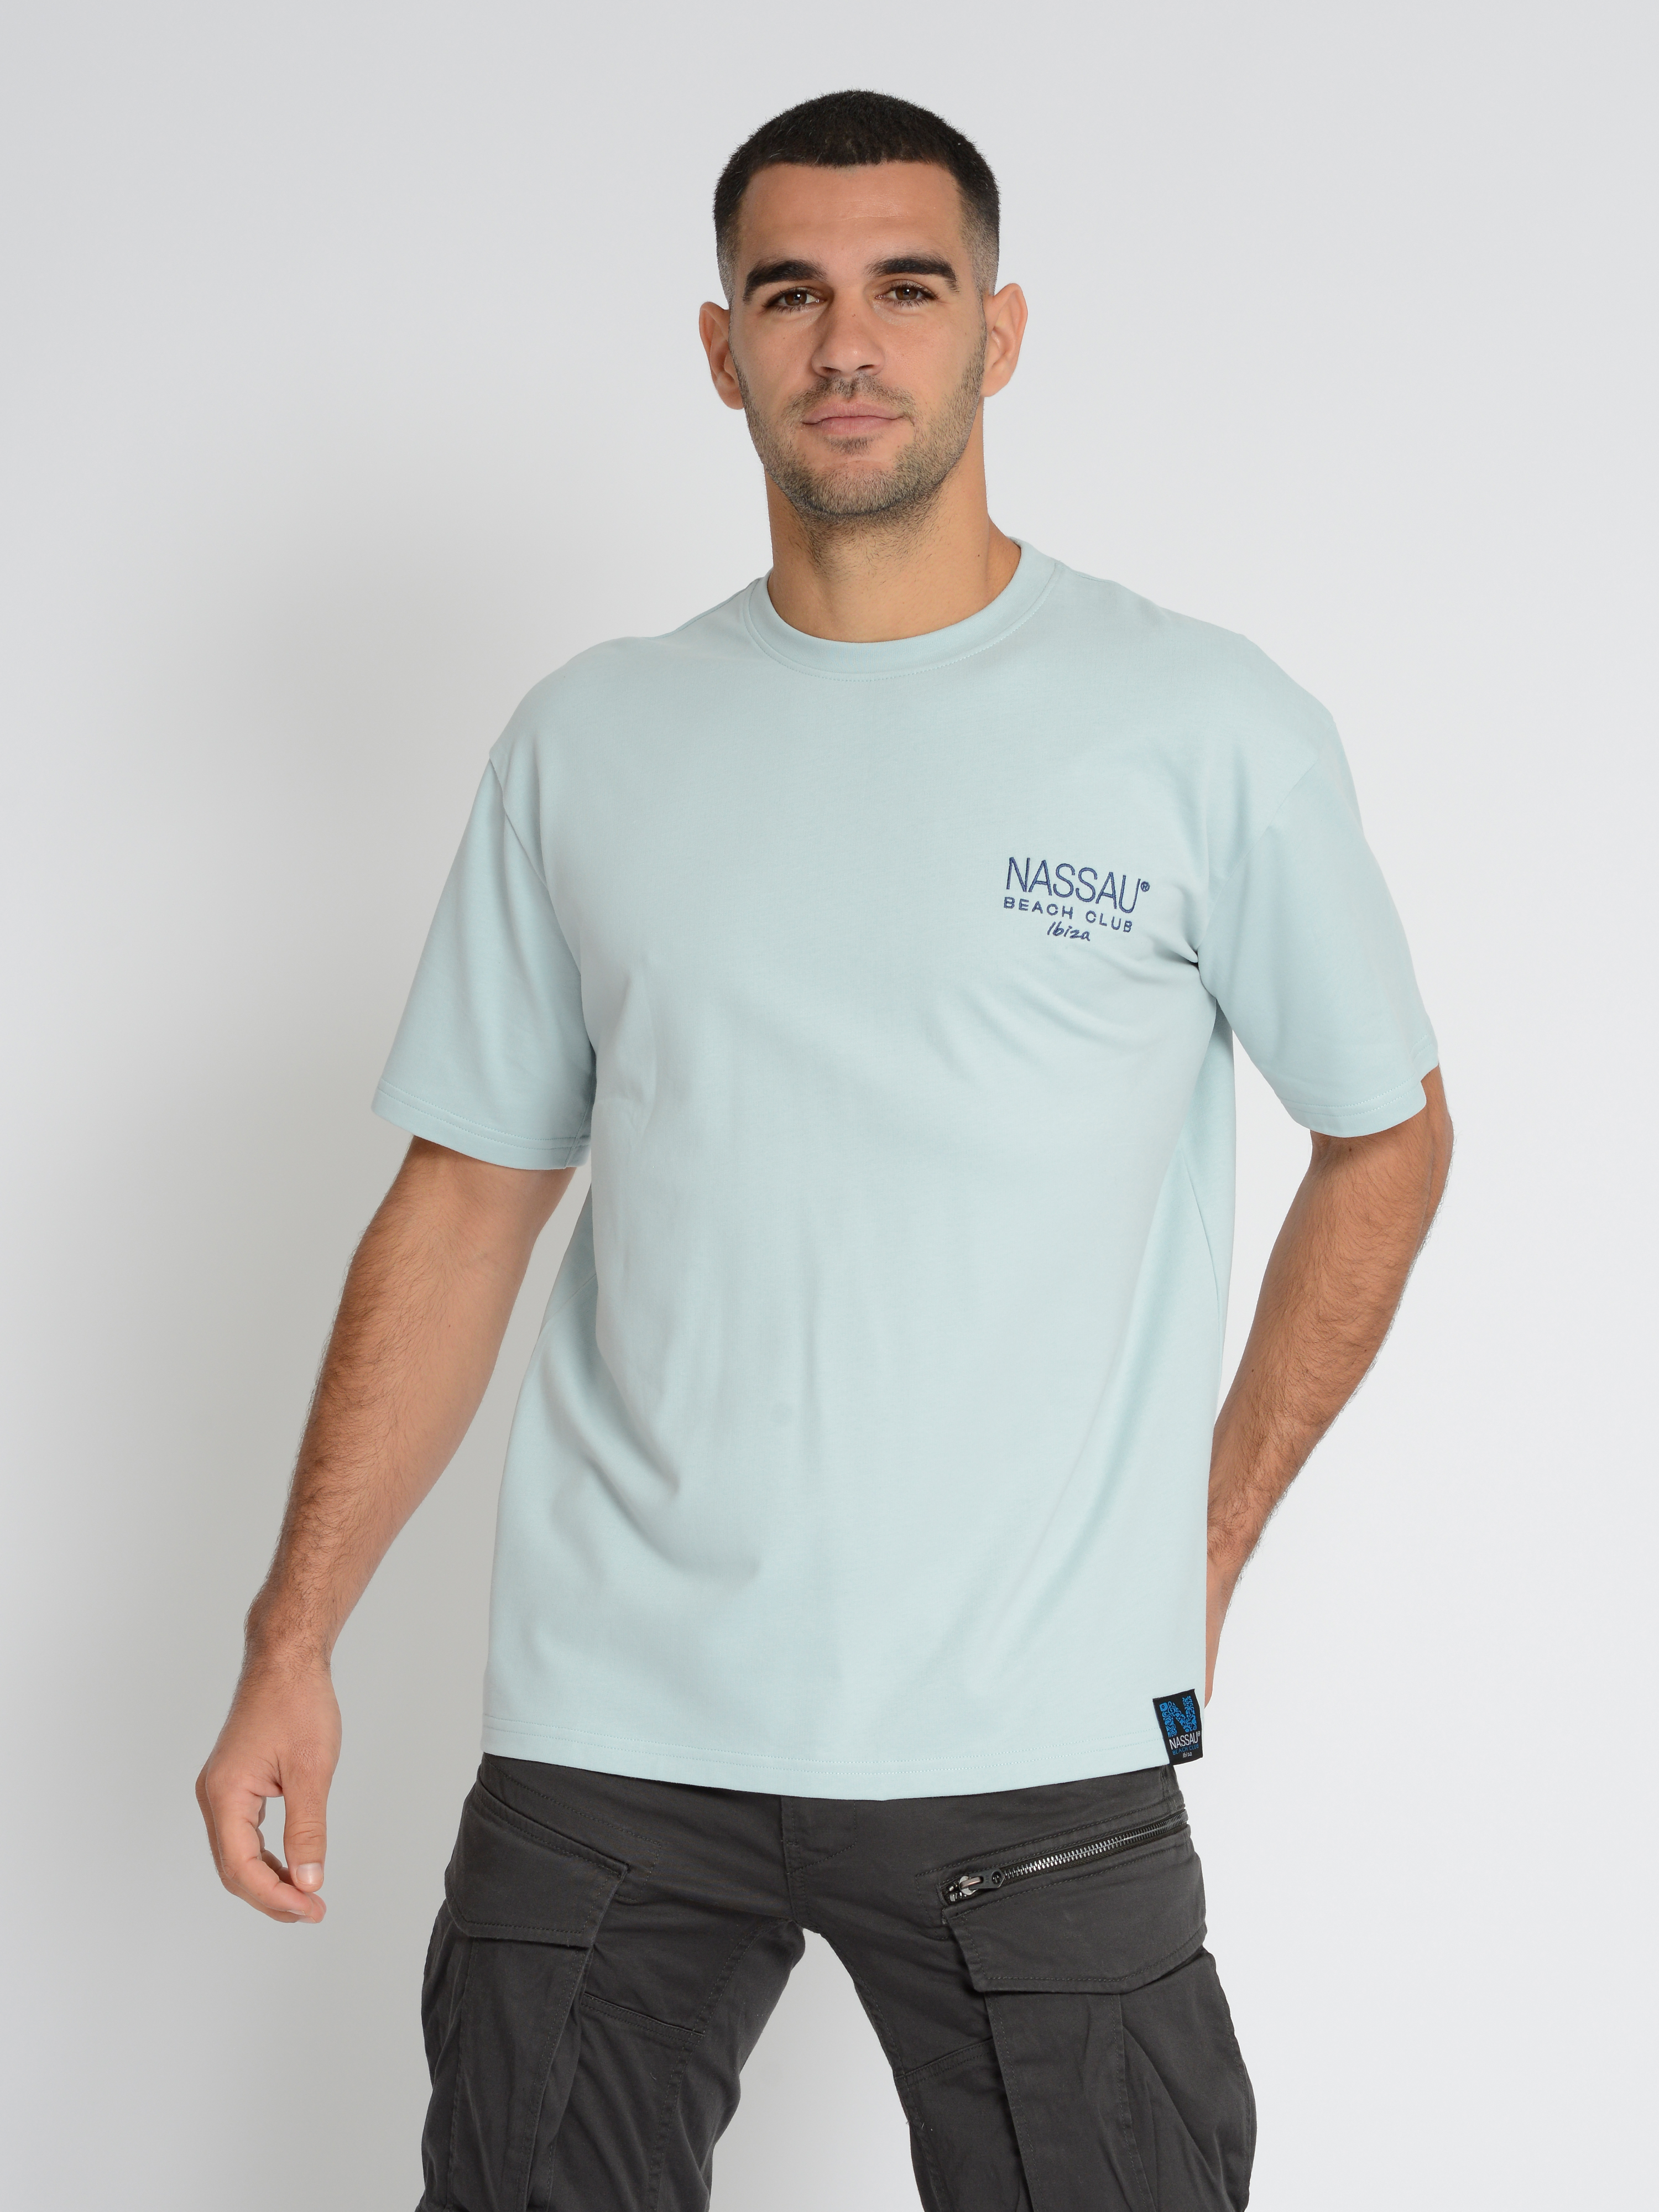  Nassau Beach T-Shirt NB231052 